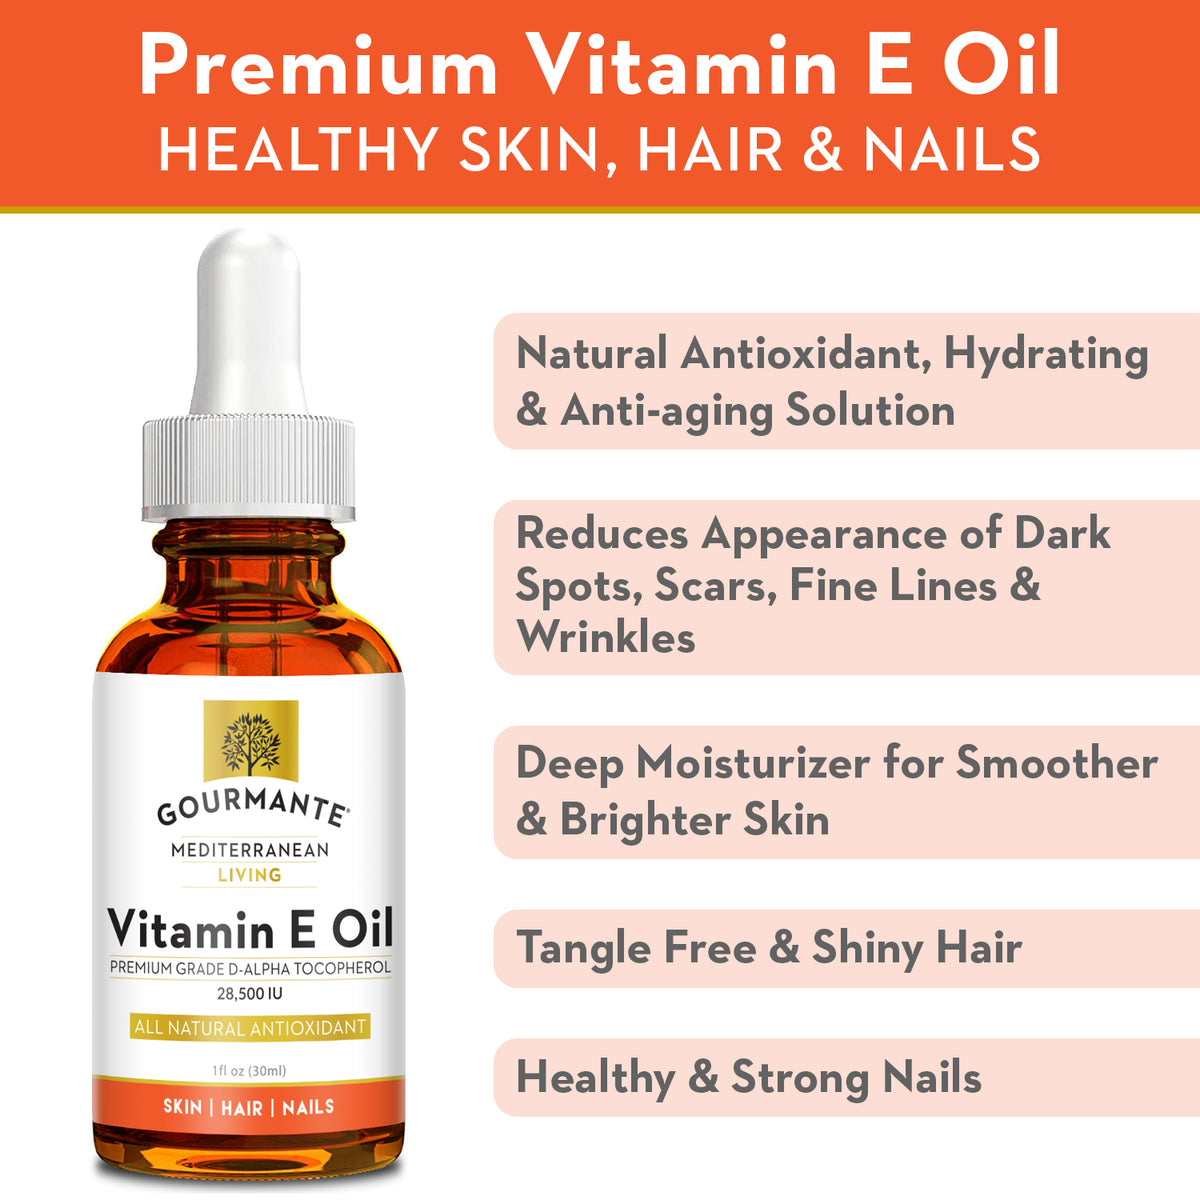 Gourmante vitamin e oil for healthy skin, hair & nails